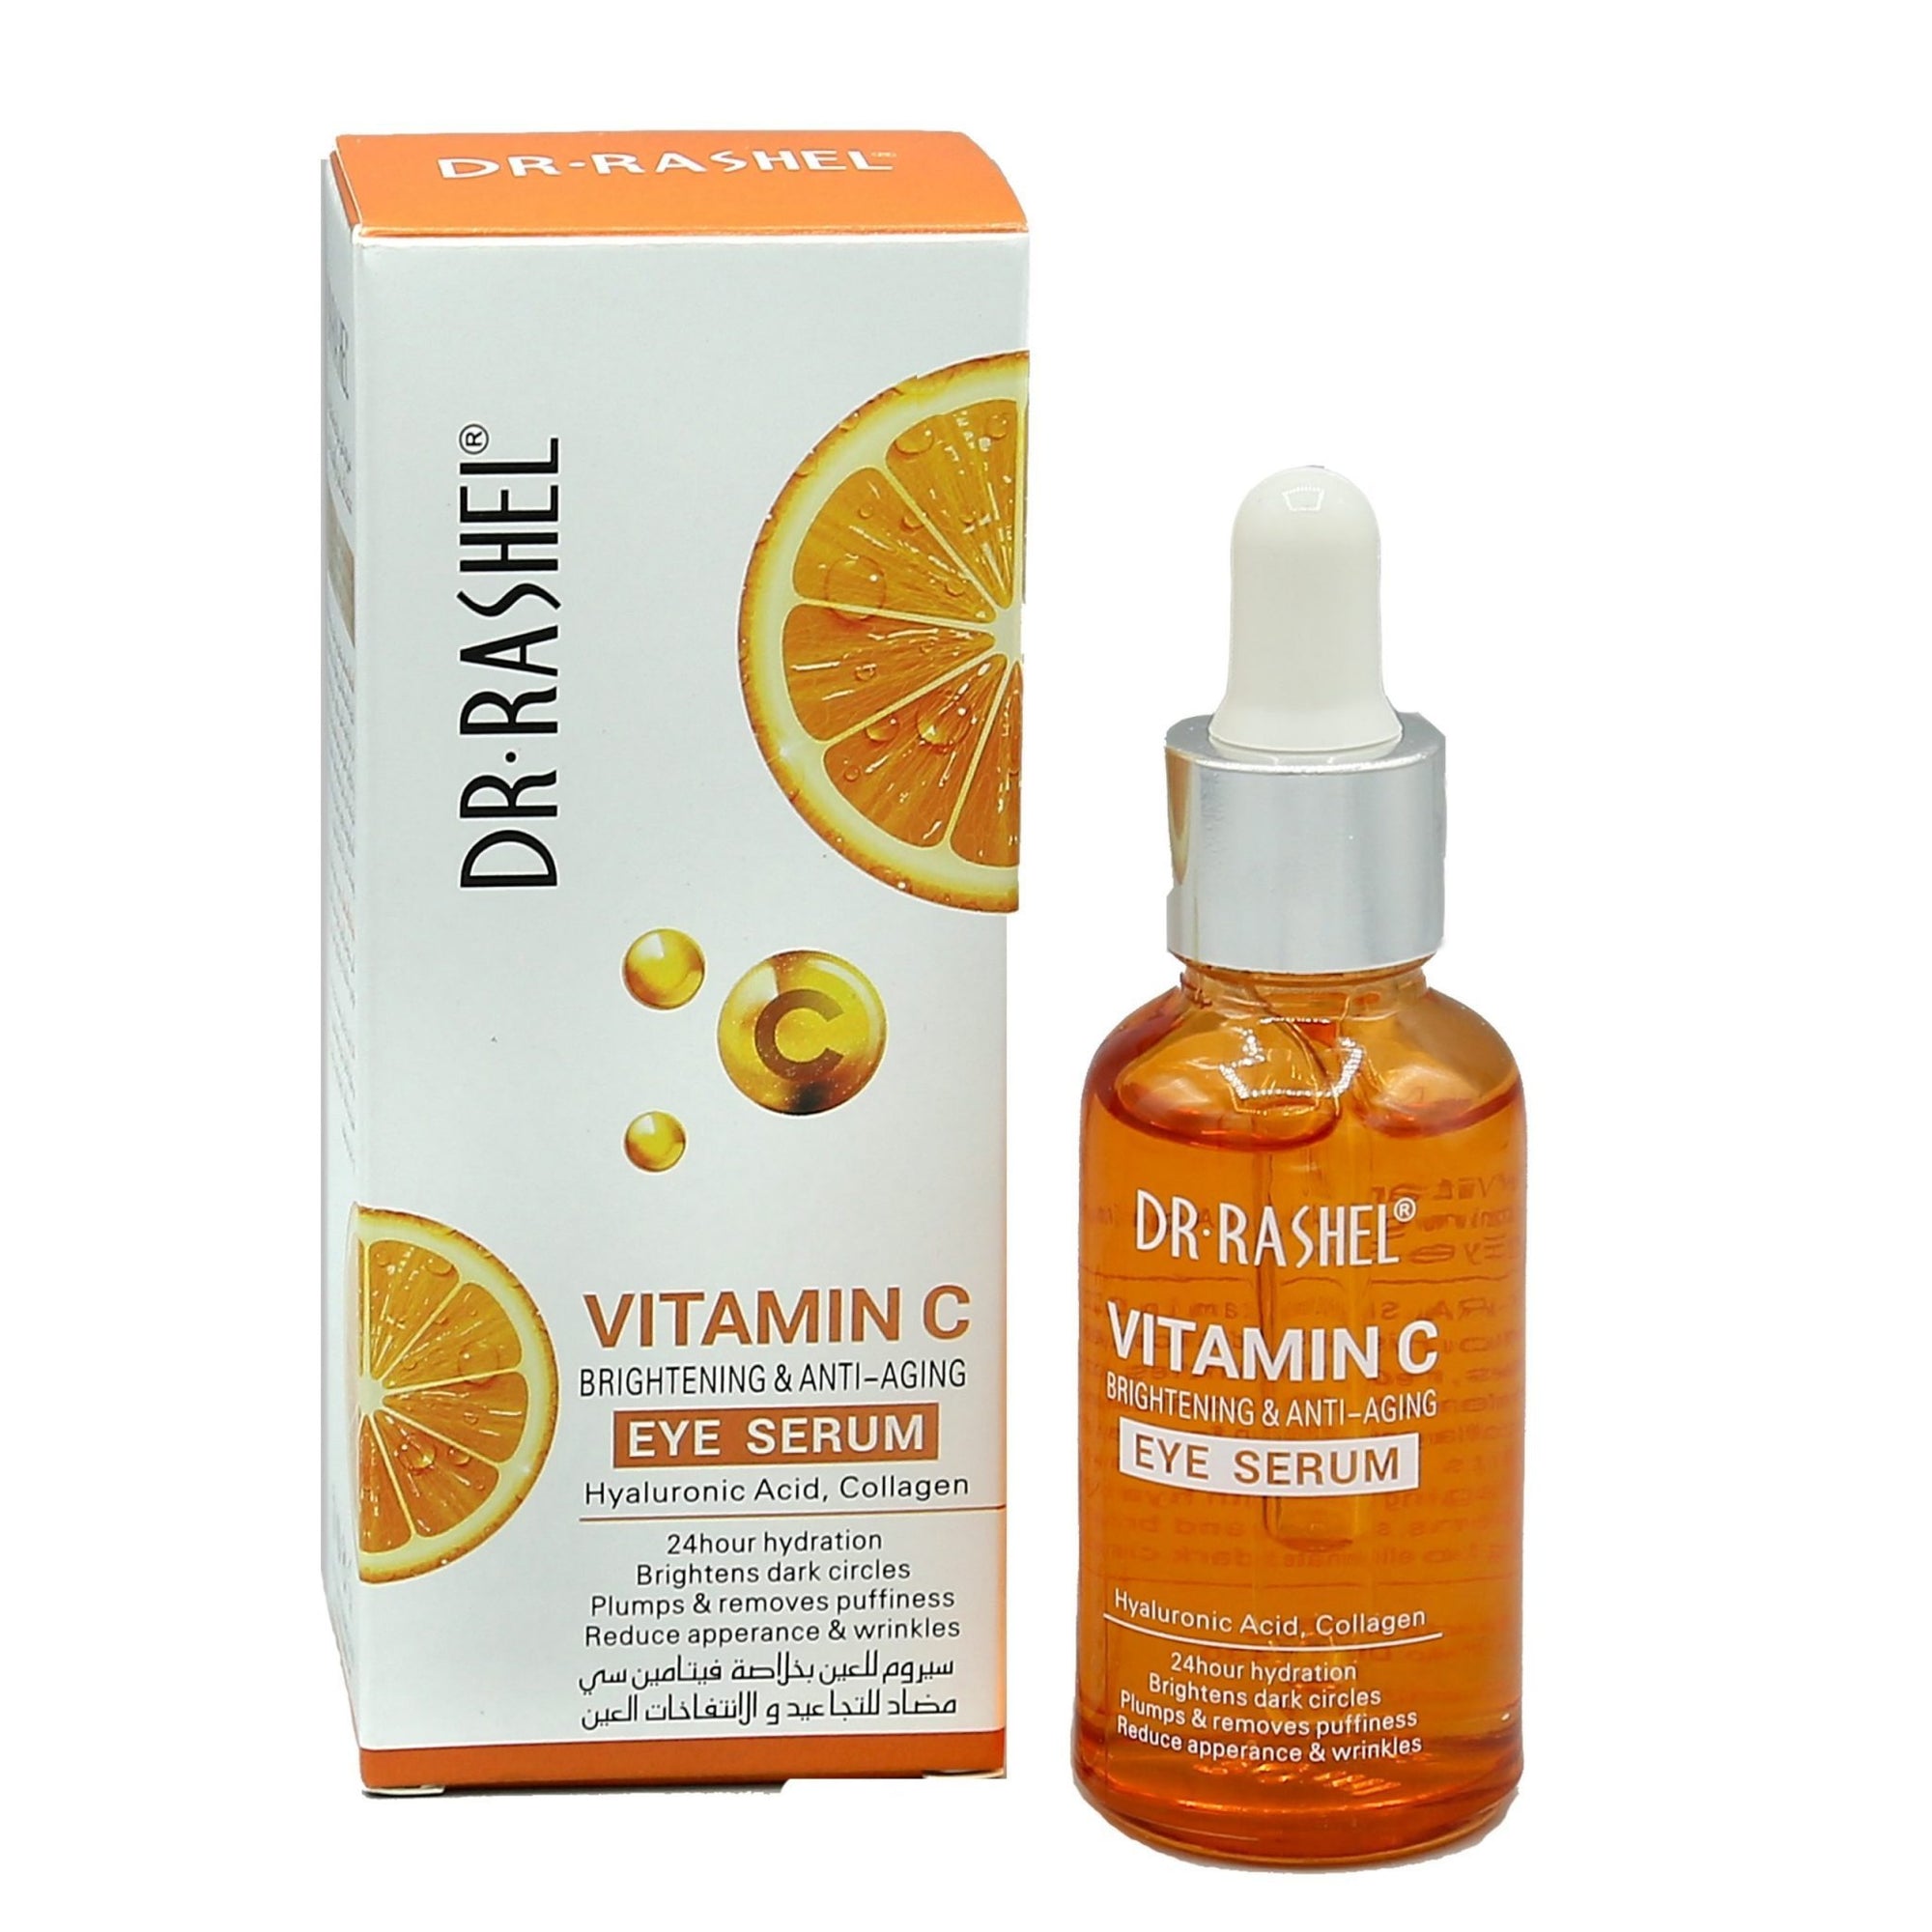 Dr Rashel Vitamin C Eye Serum Brightening & Anti Aging 30ml freeshipping - lasertag.pk